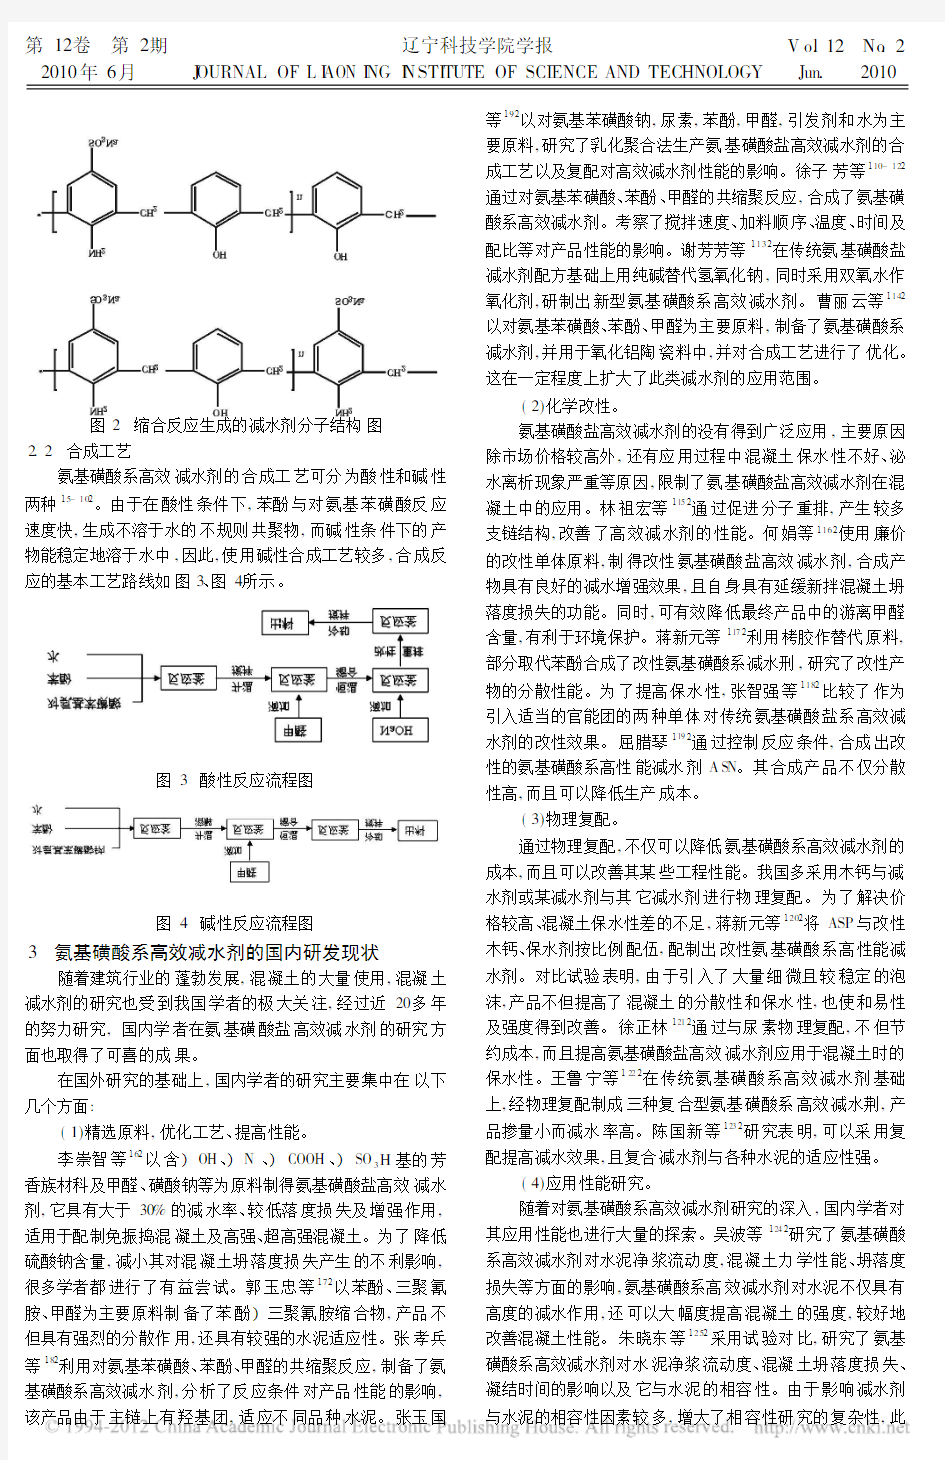 国内氨基磺酸盐高效减水剂研究发展现状_崔绍波